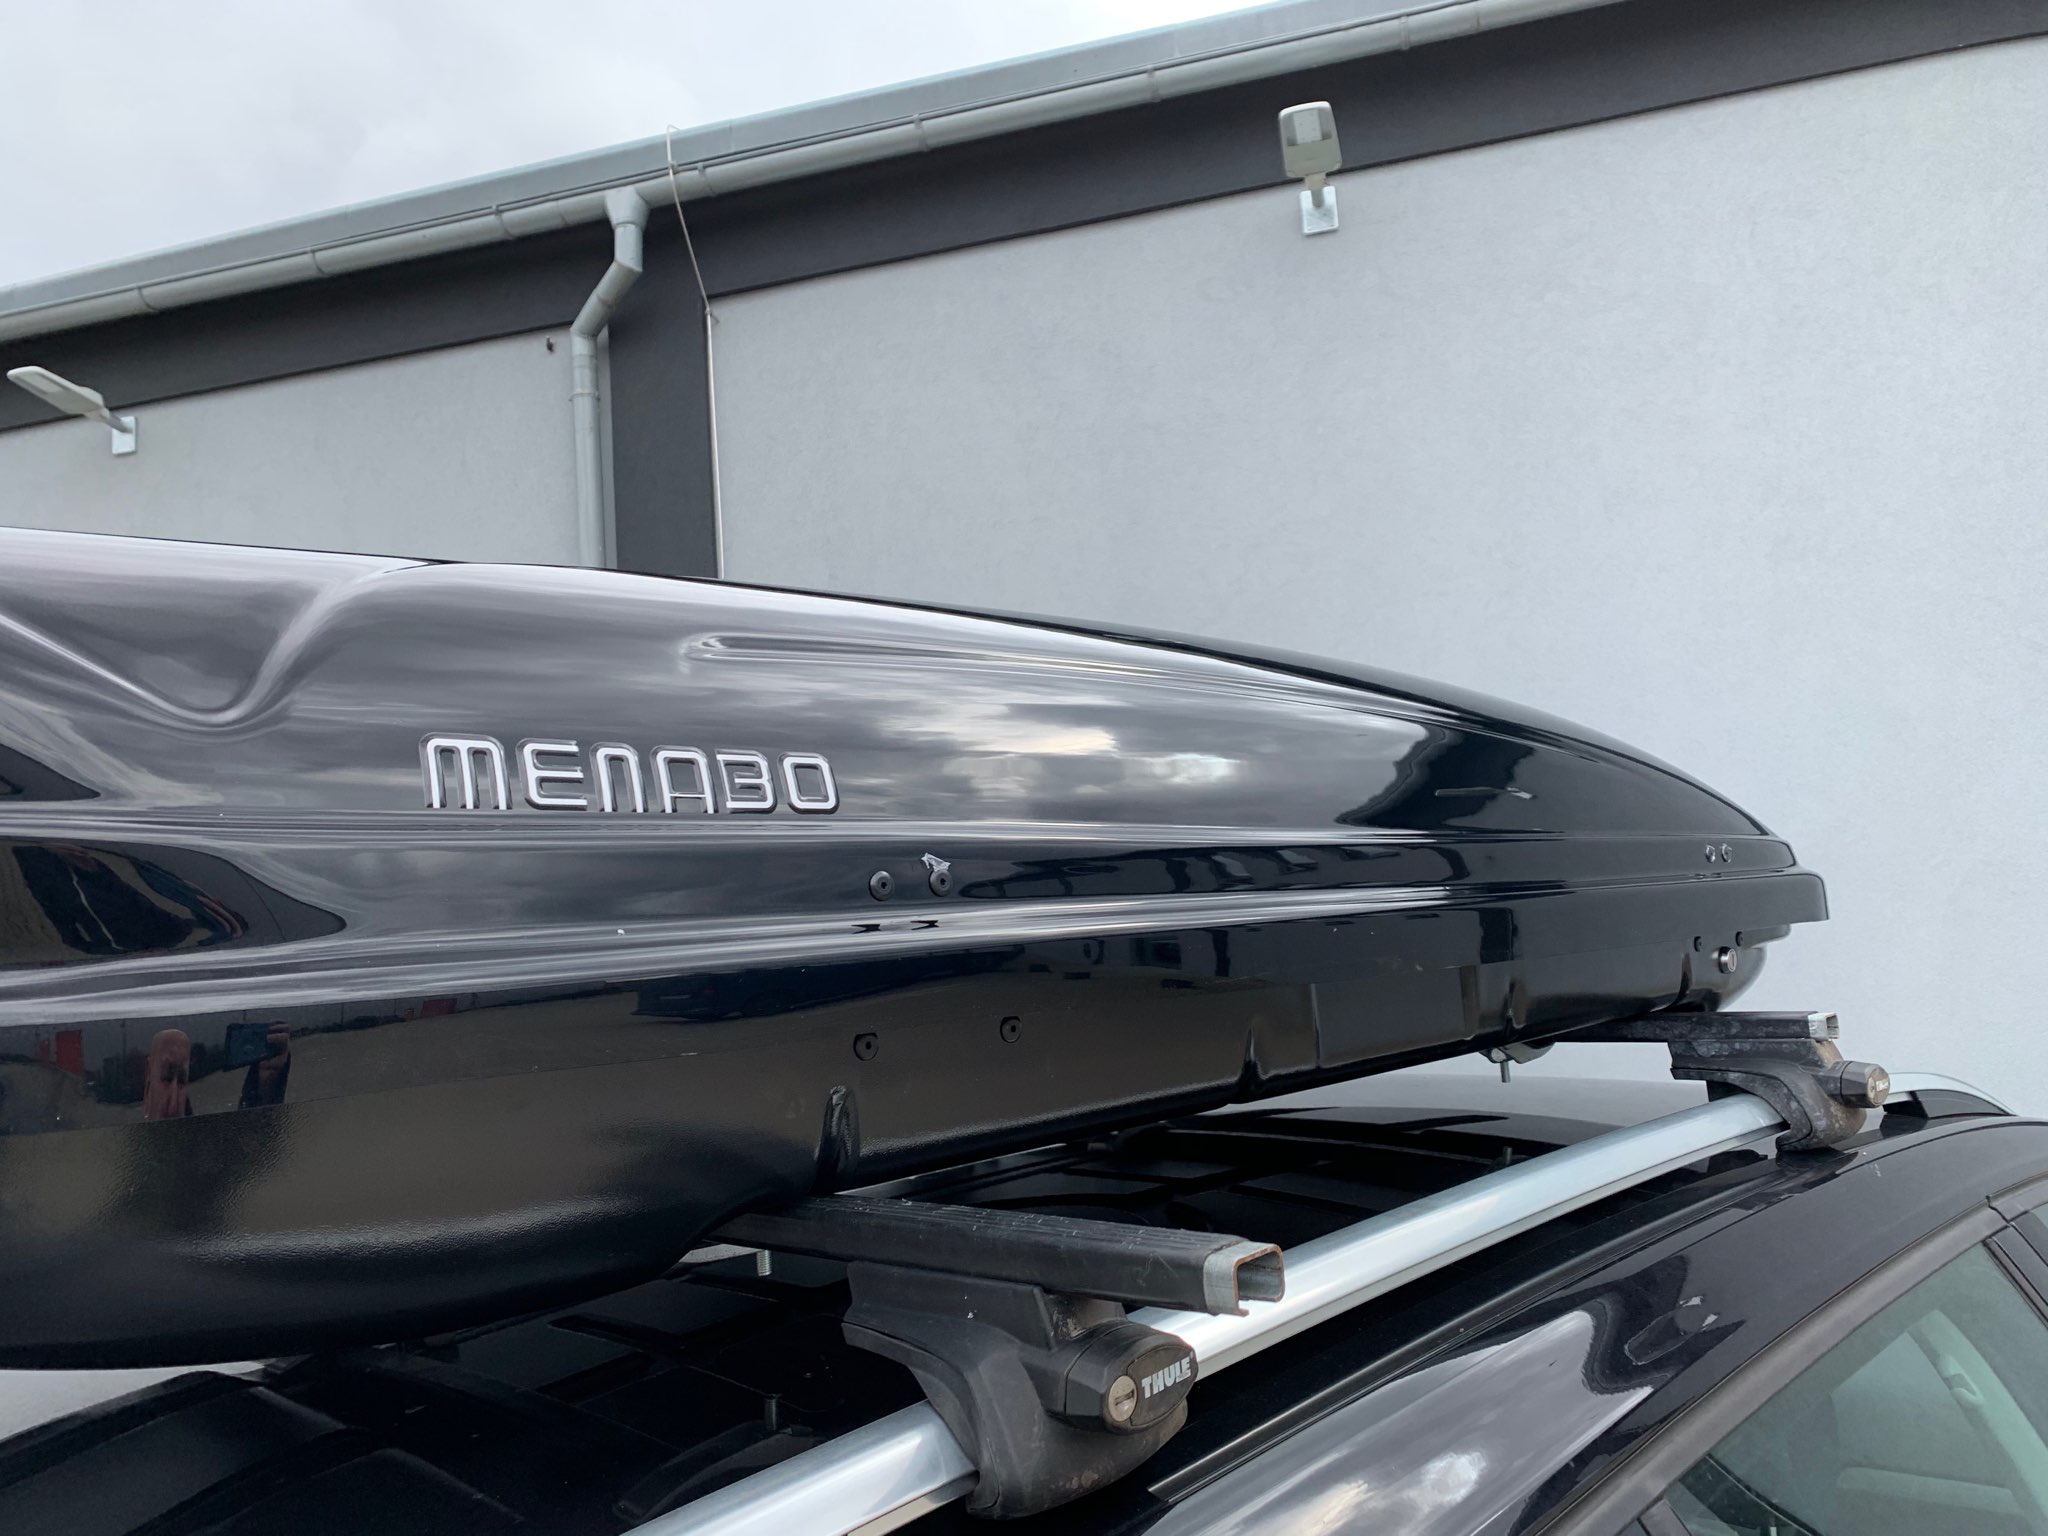 Montáž střešního boxu Menabo Mania 460 na vozidlo zákazníka v dílně Filsonstore